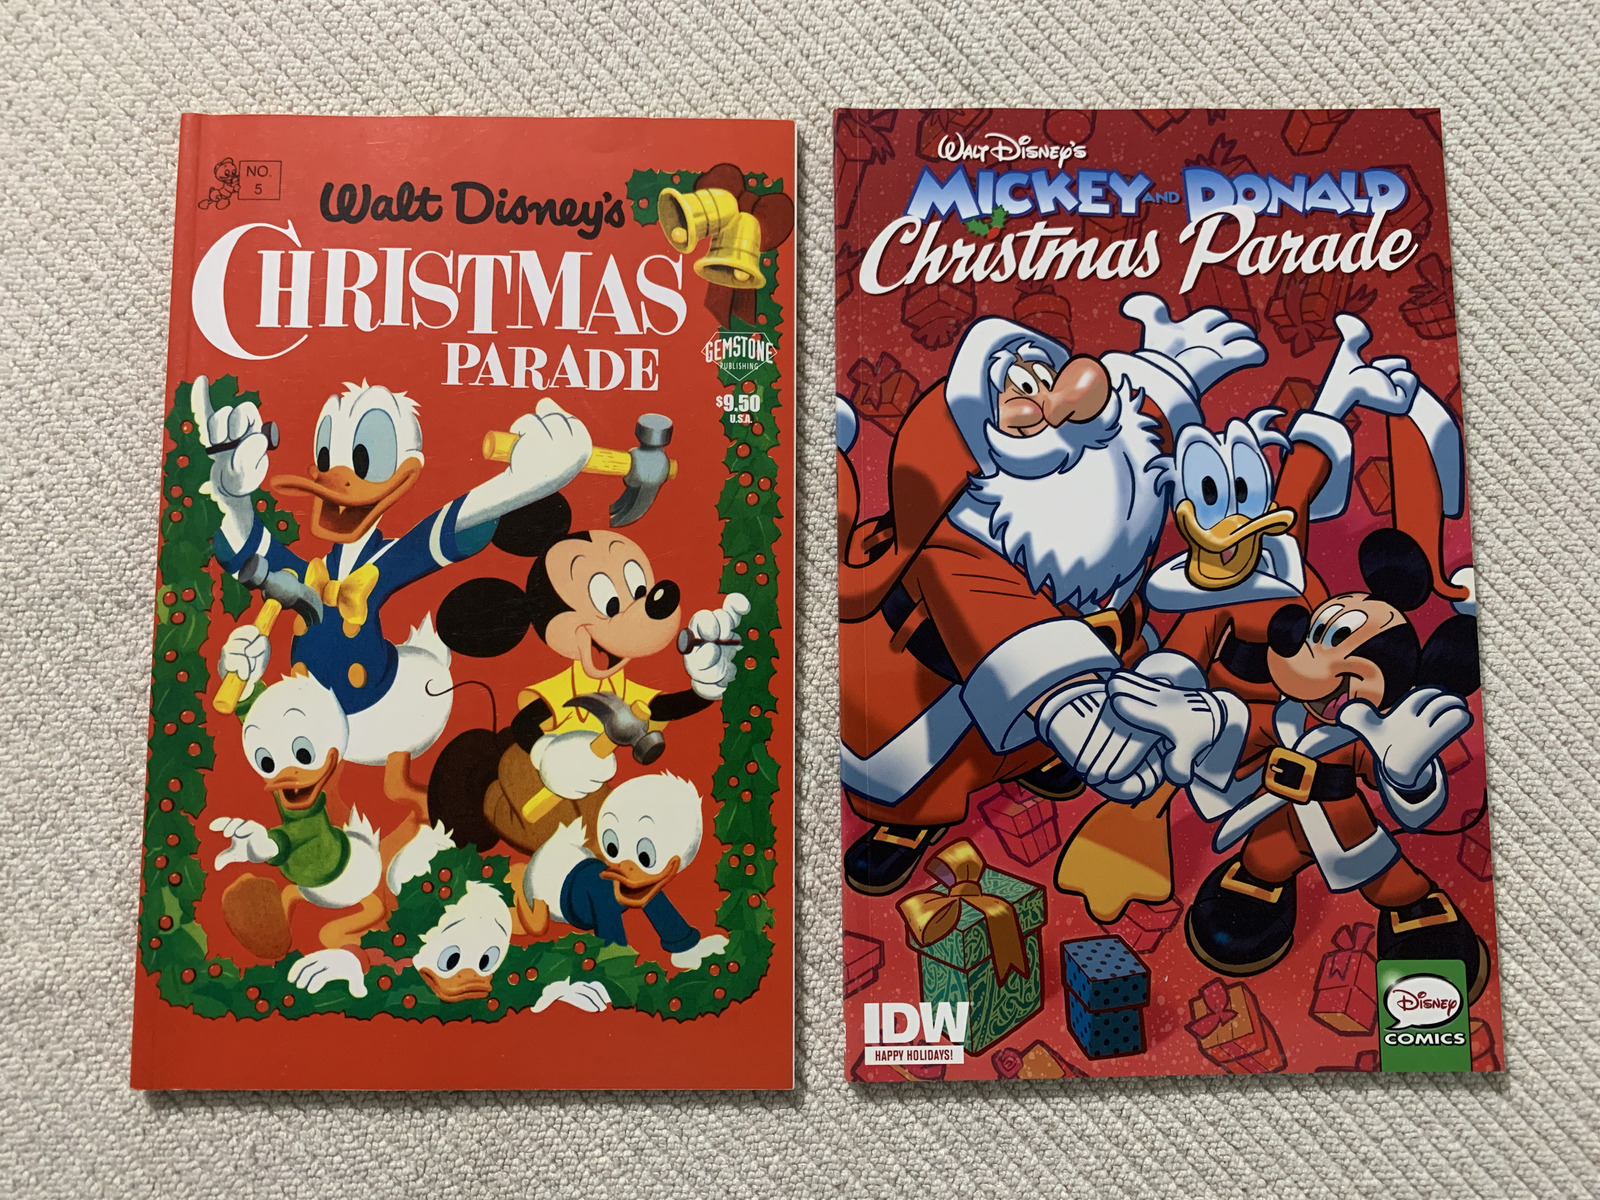 Mickey and Donald Christmas Parade #1 Dec-2015 and Disney Christmas Parade #5